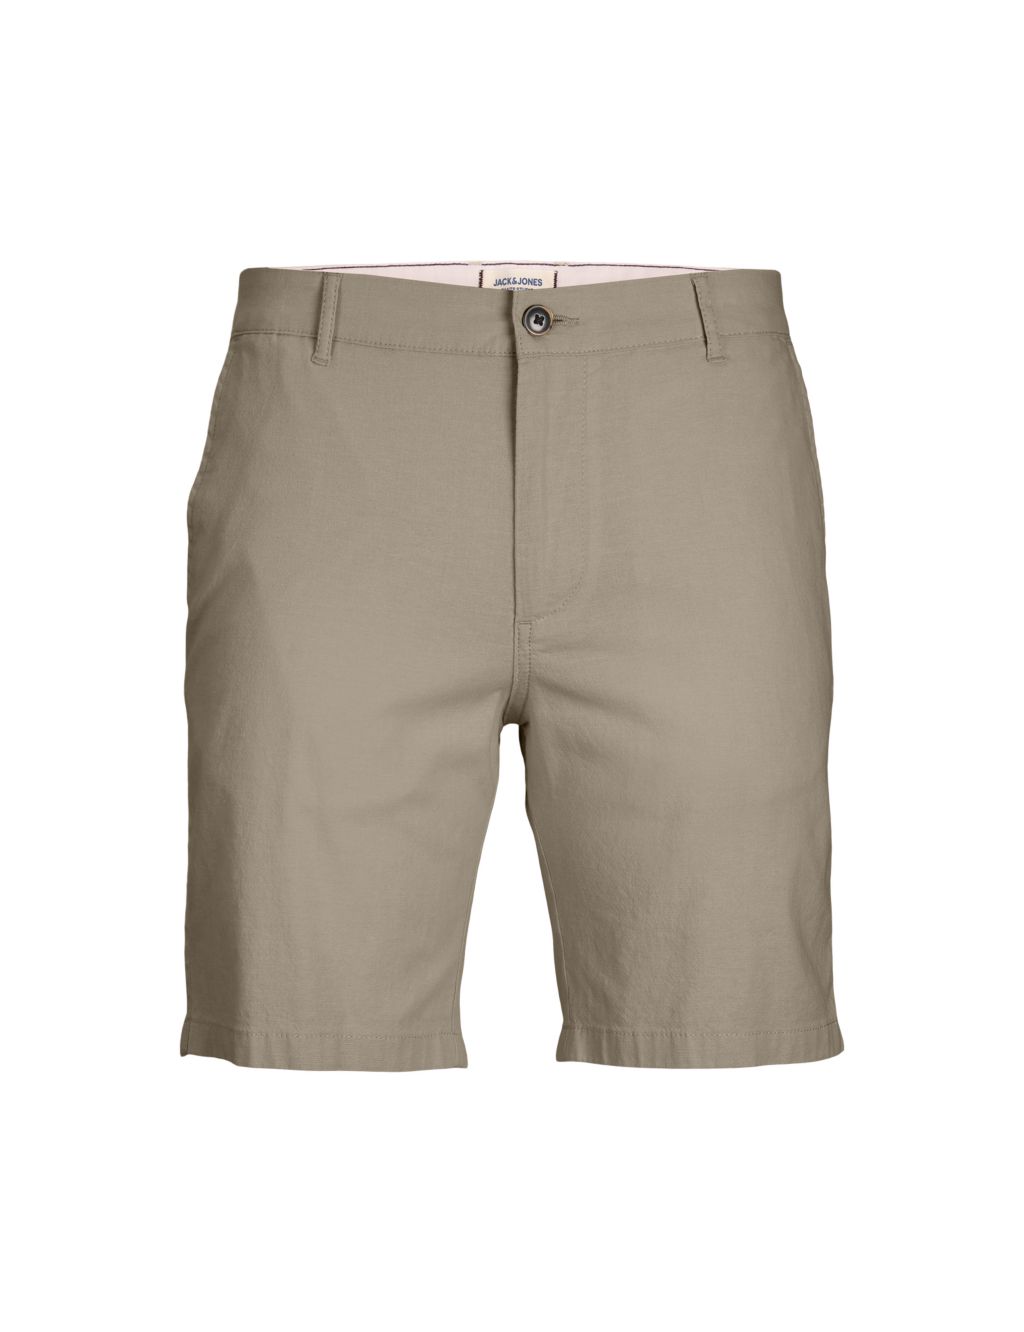 Chino Shorts 1 of 7